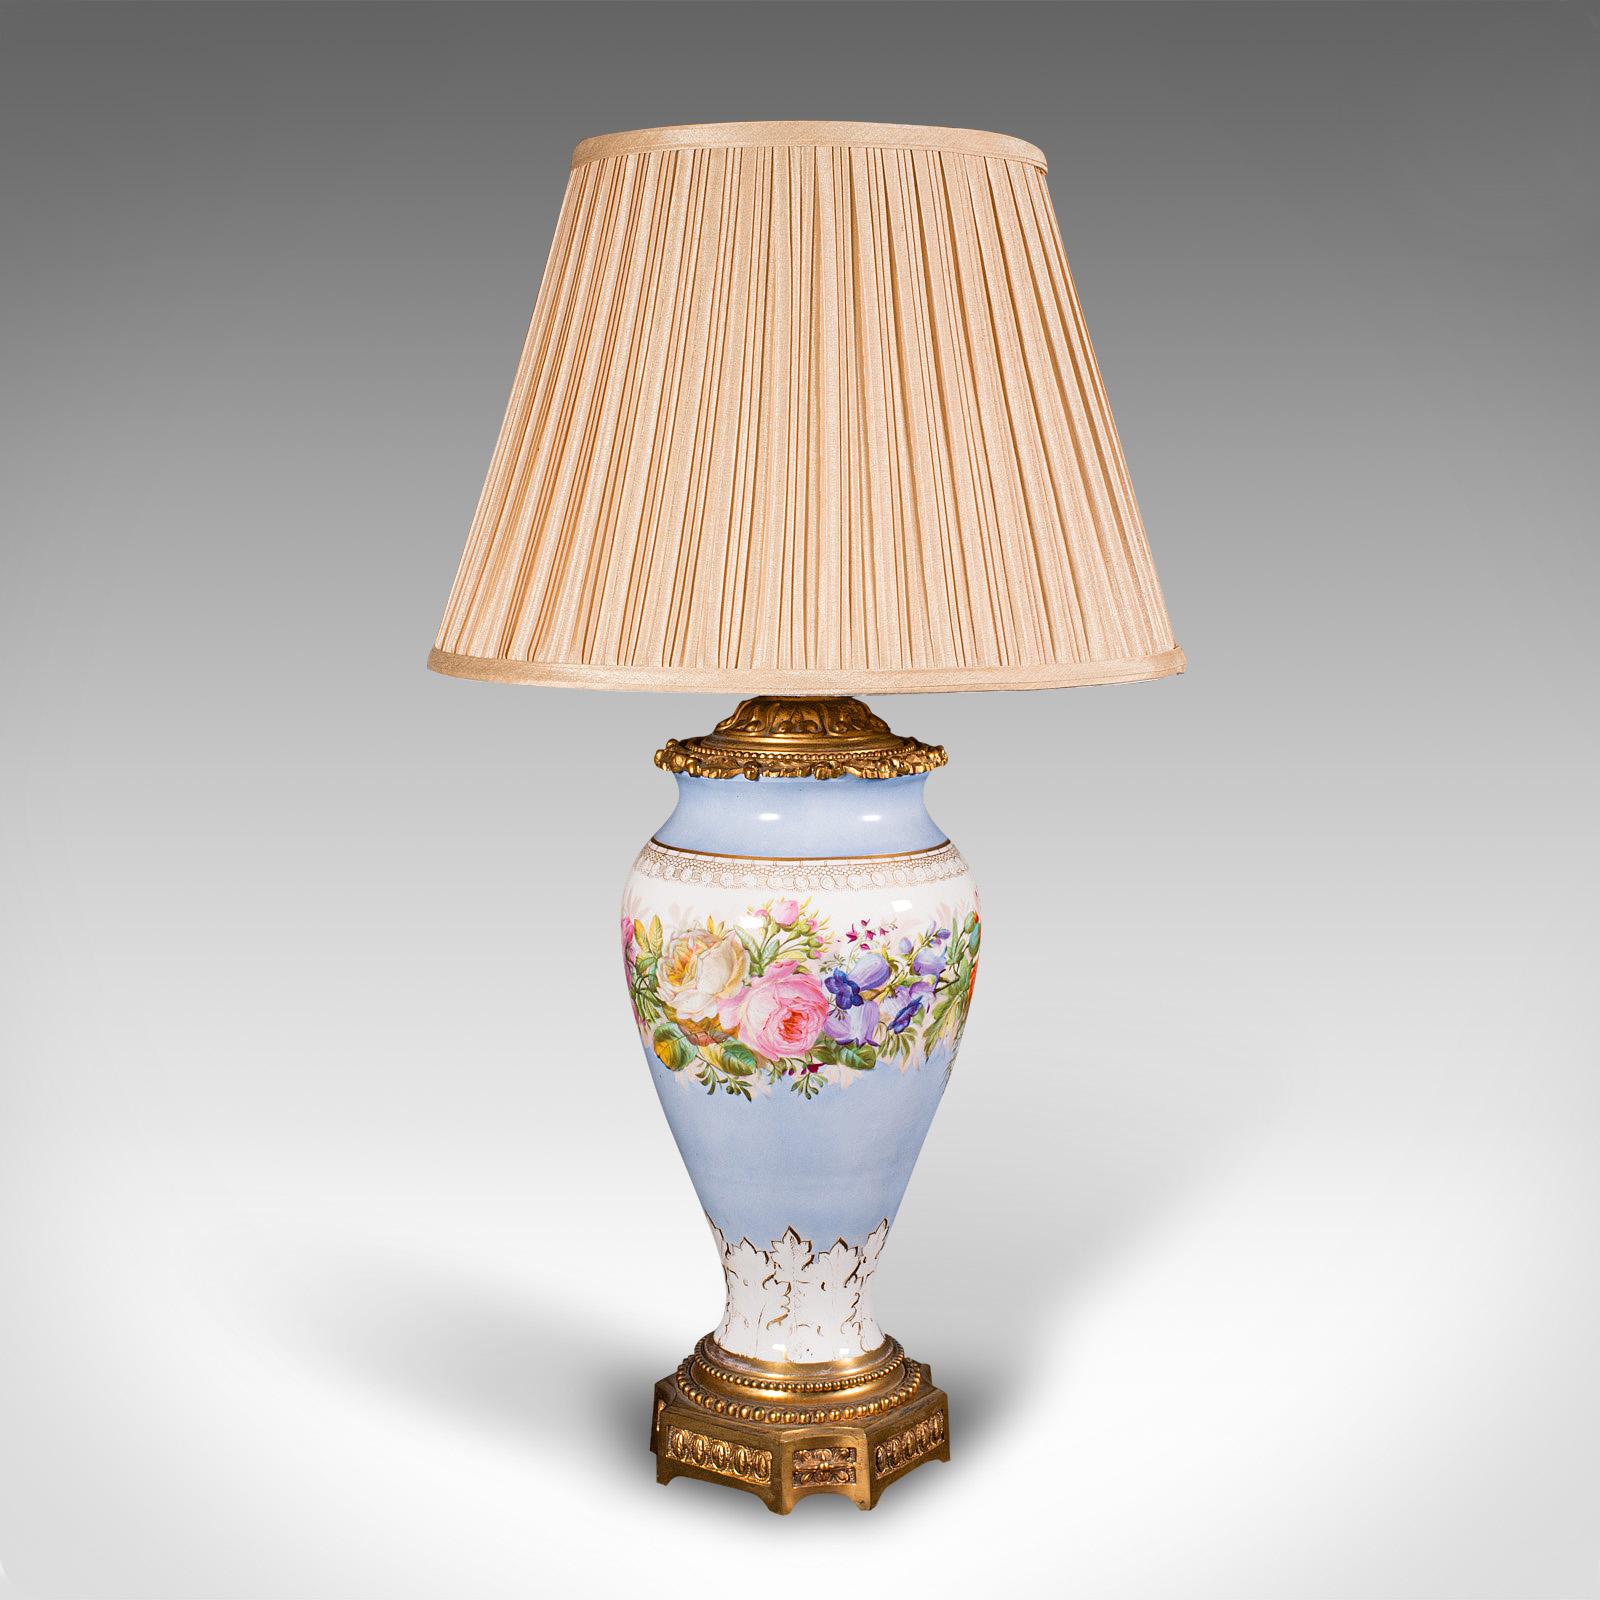 
Dies ist eine Vintage-Café-Lampe. Dekorative französische Tischleuchte aus Keramik und vergoldetem Metallguss aus dem frühen 20. Jahrhundert, um 1930.

Feine Tischlampe mit farbenfrohem Blattwerk
Zeigt eine wünschenswerte gealterte Patina und in